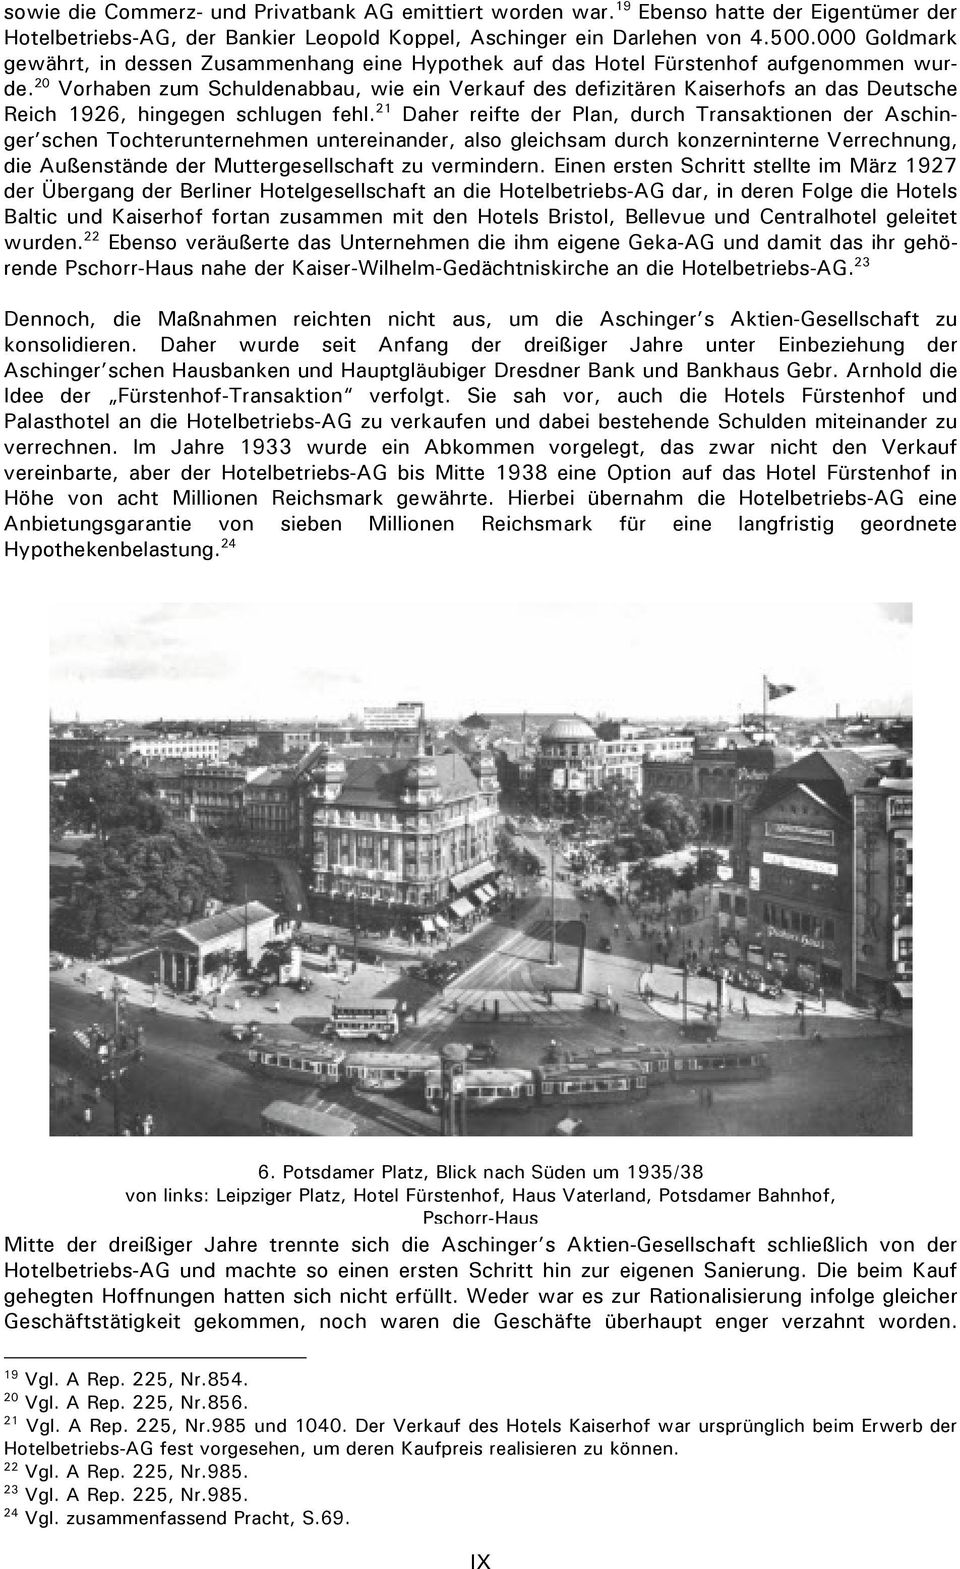 20 Vorhaben zum Schuldenabbau, wie ein Verkauf des defizitären Kaiserhofs an das Deutsche Reich 1926, hingegen schlugen fehl.